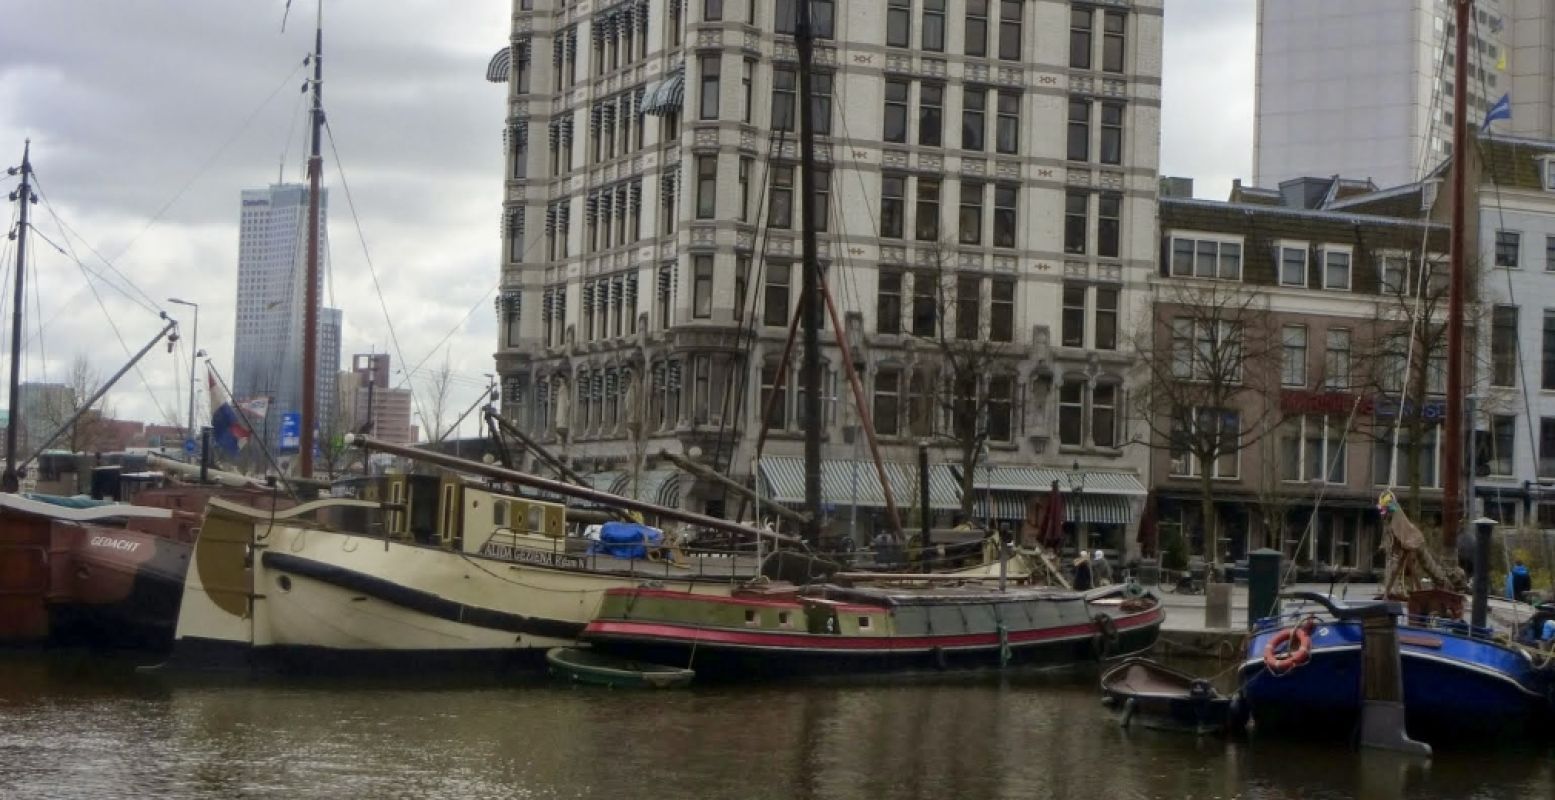 De scheepsvaart van vroeger vind je nog in de oude haven van Rotterdam. Foto: Henk Arendse